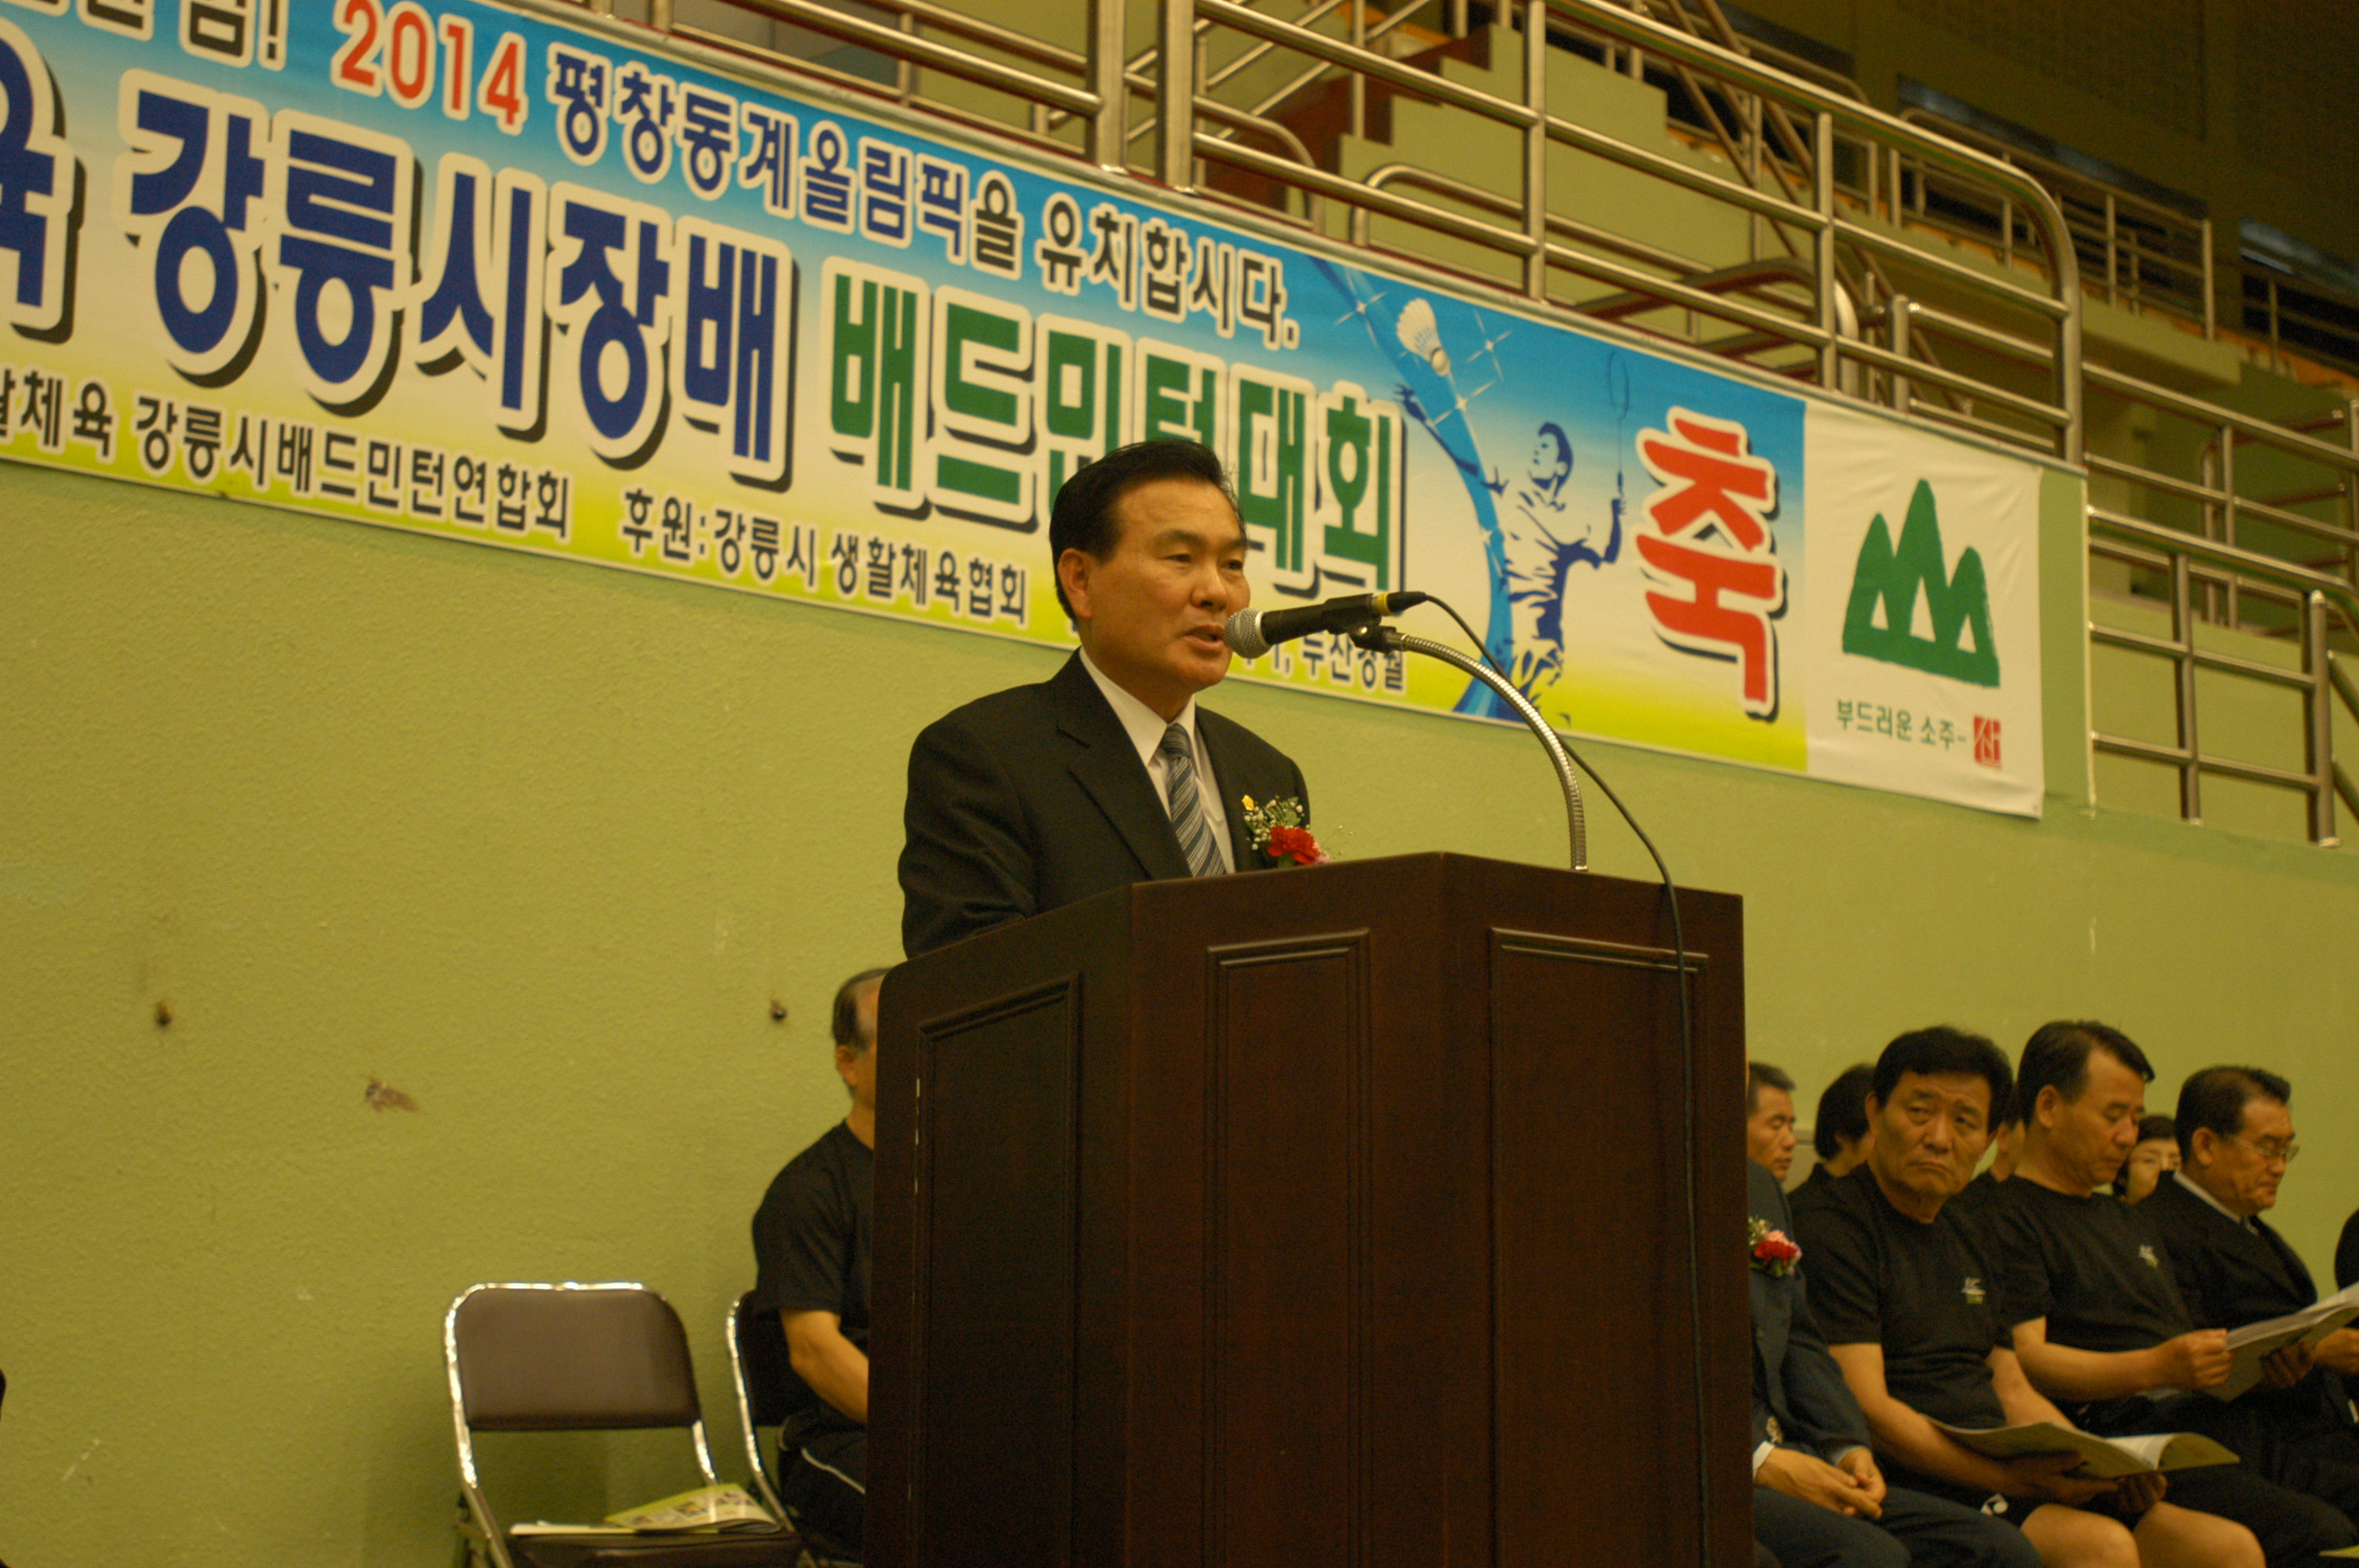 강릉시장배 배드민턴대회(2005.5.22)-3 대표이미지